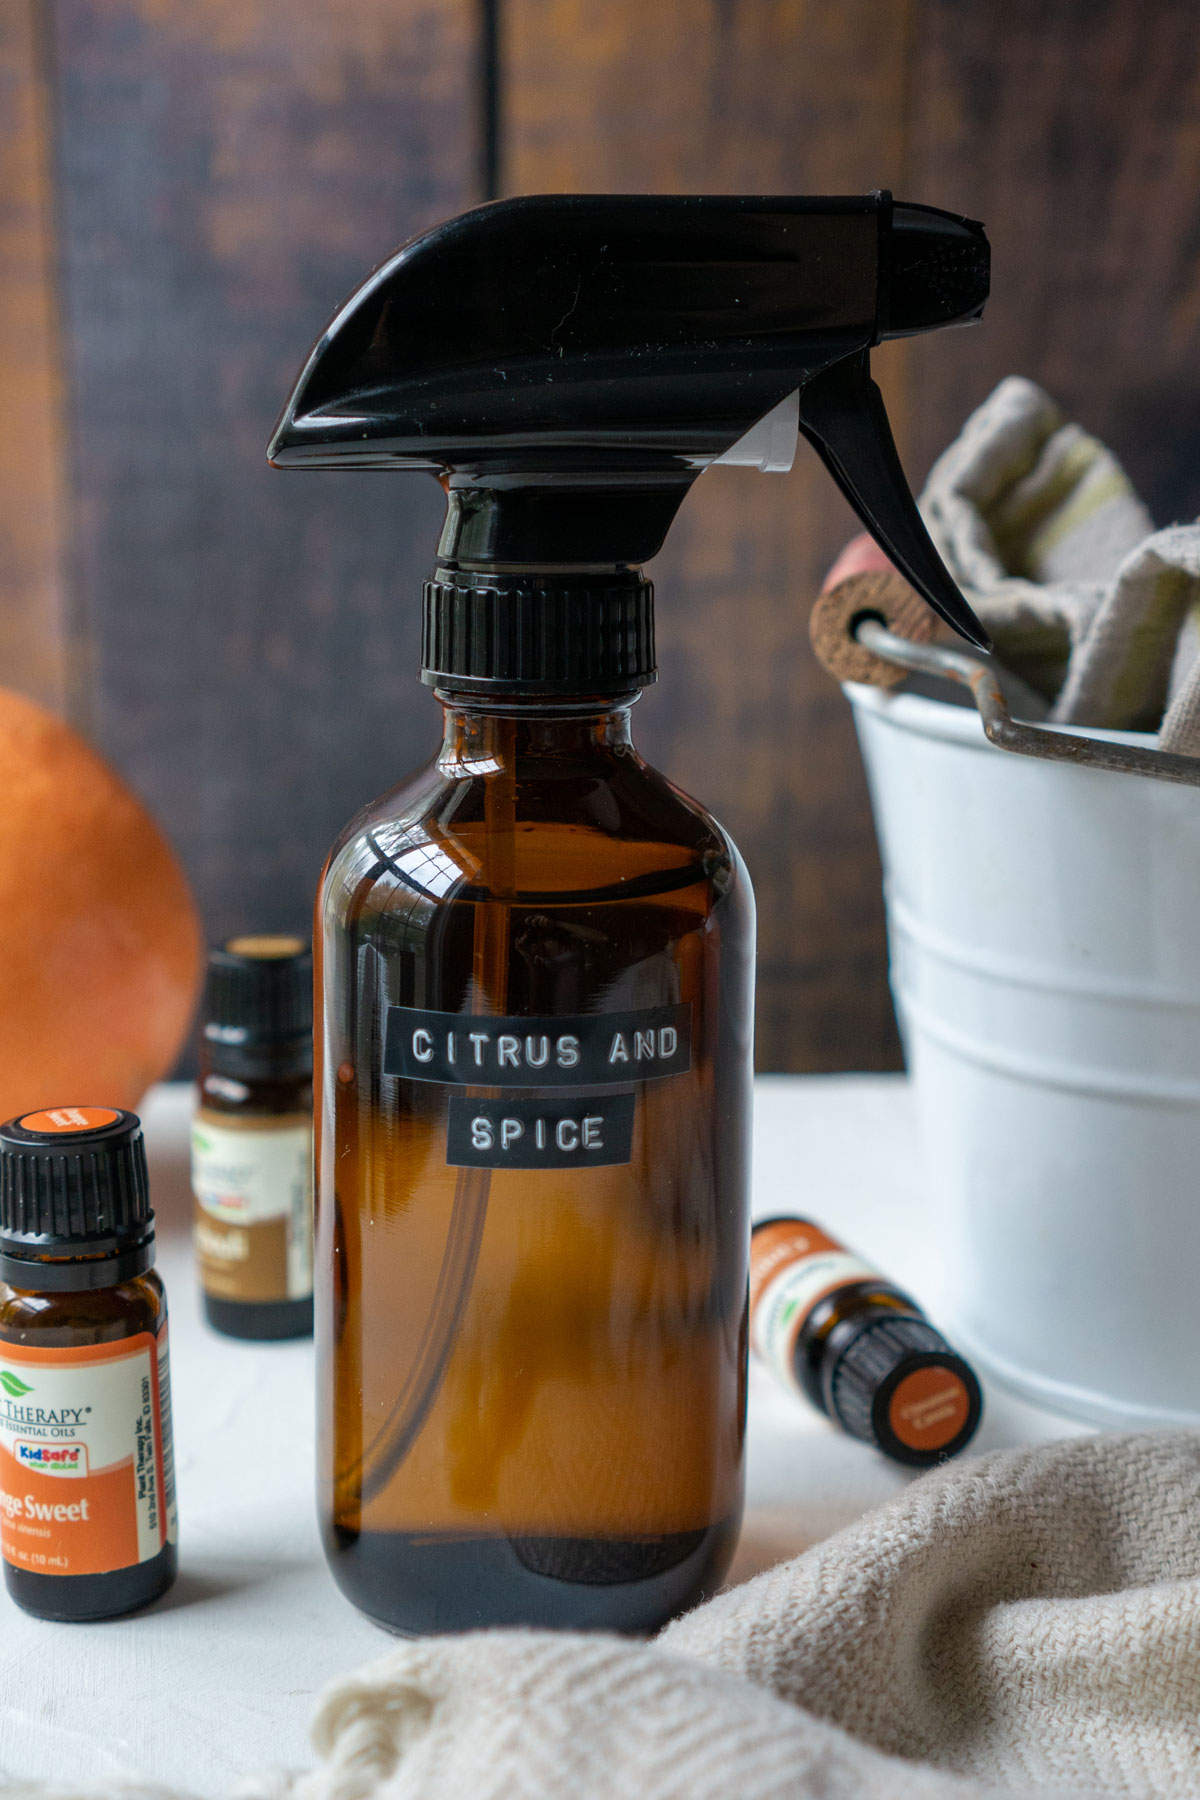 Ctirus and Spice all-purpose cleaner recipe